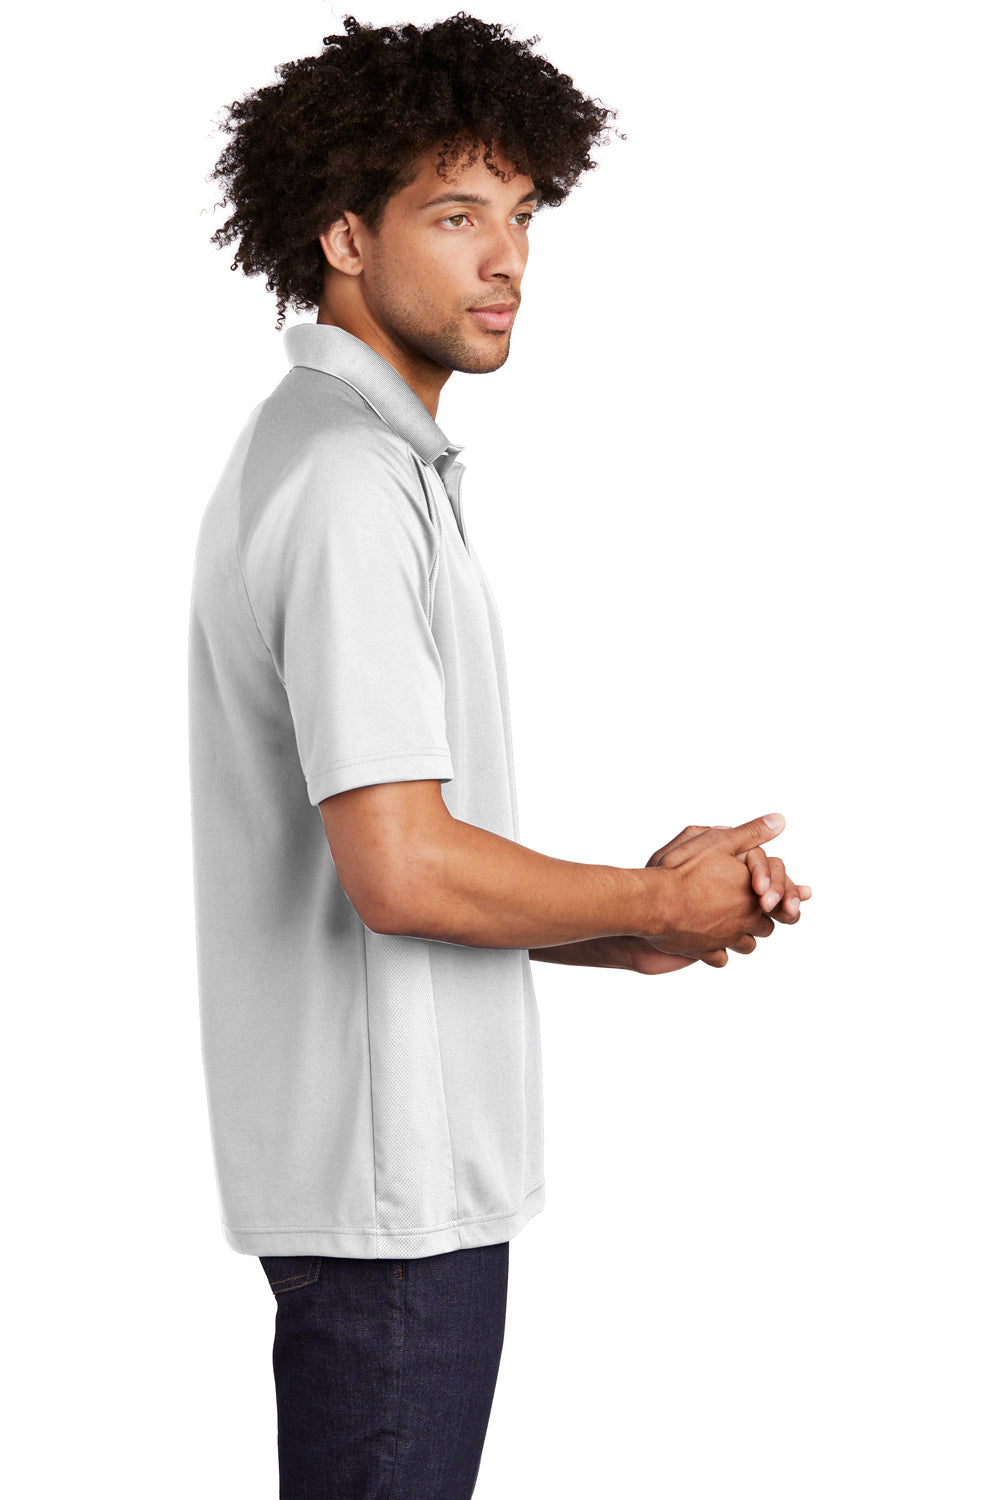 Sport-Tek T474 Mens Dri-Mesh Moisture Wicking Short Sleeve Polo Shirt White Side